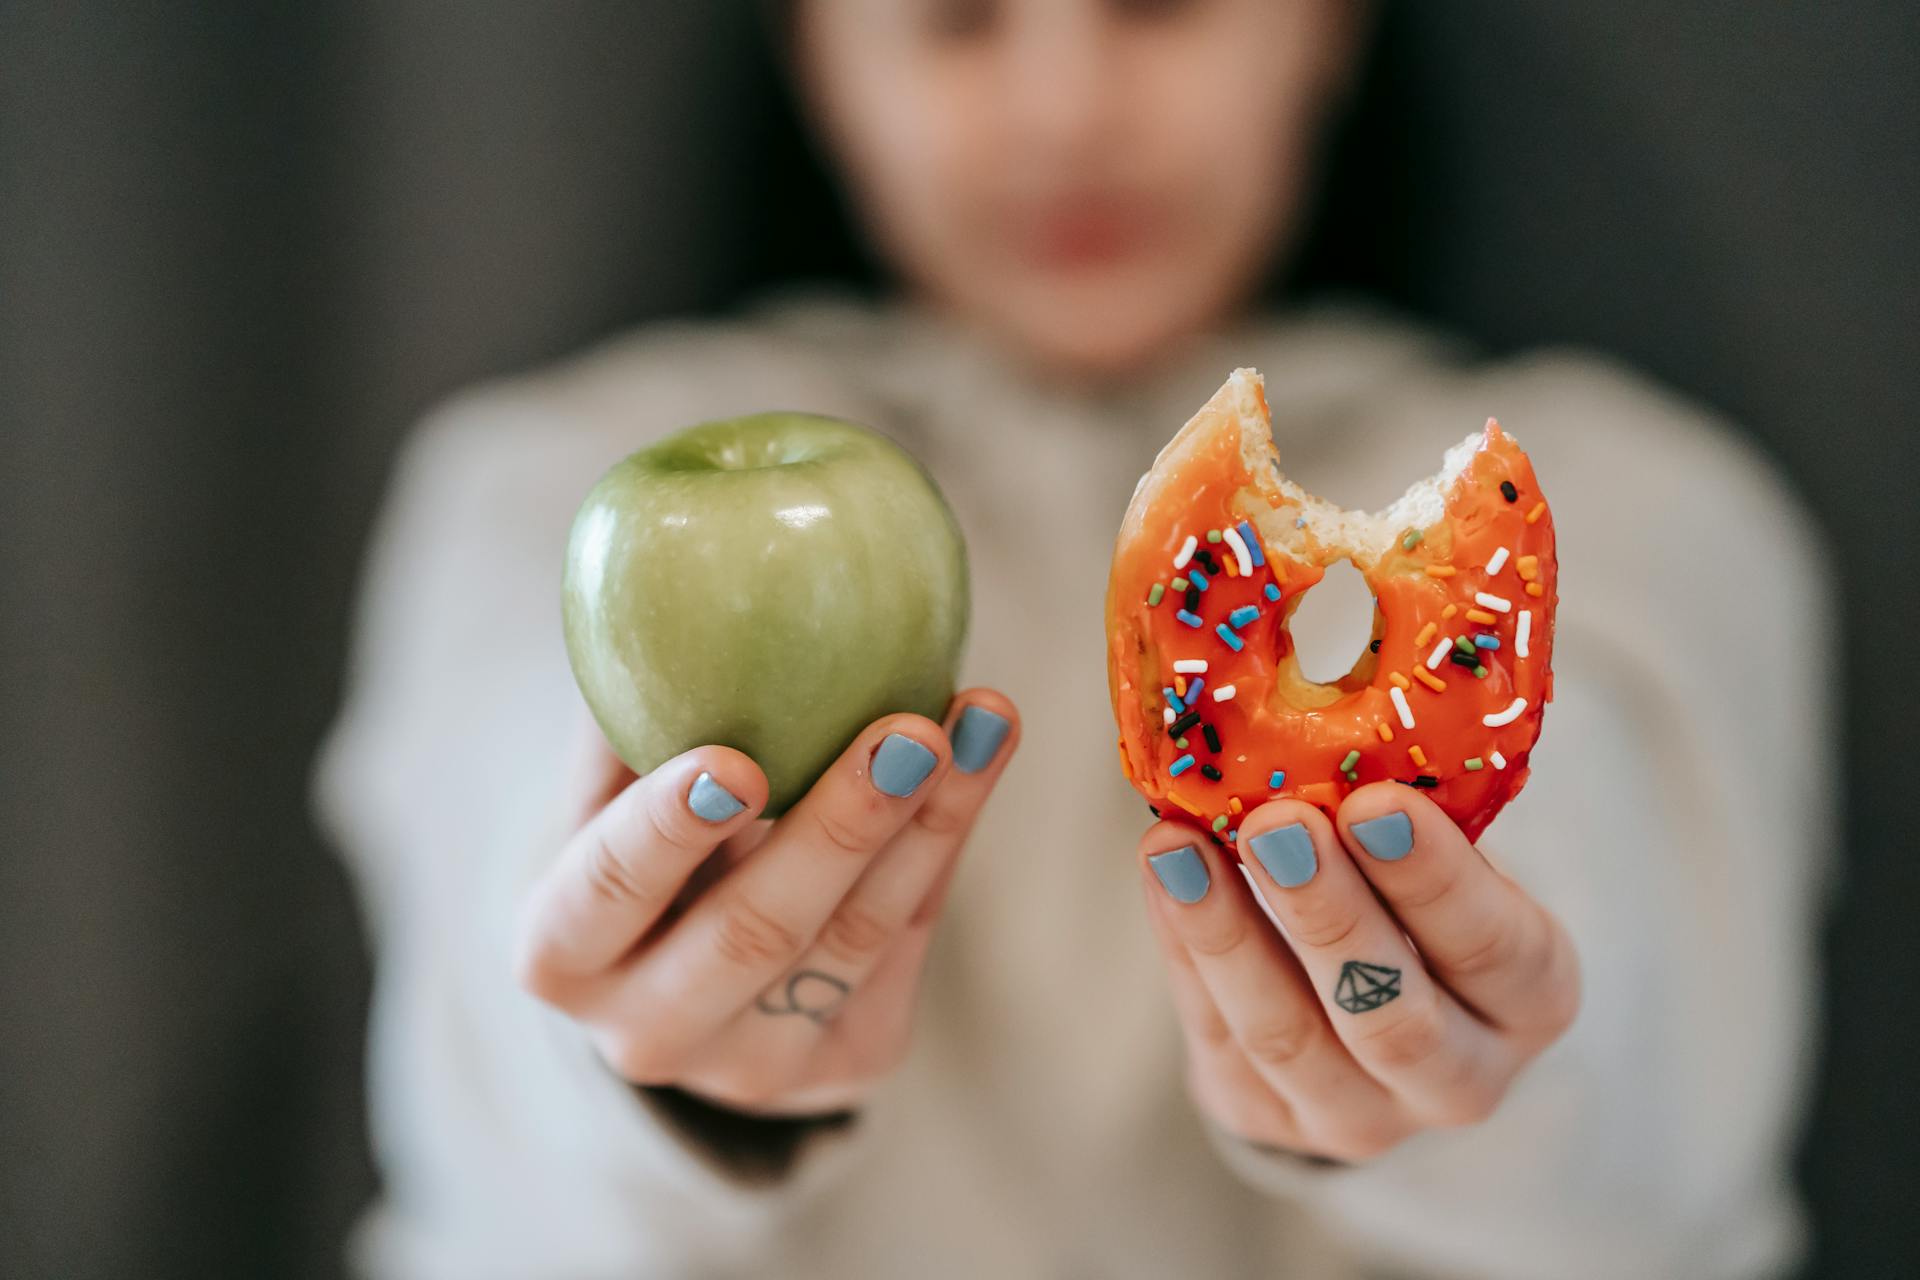 Une personne montre une pomme et un donuts pour comparer leurs valeurs nutritionnelles.